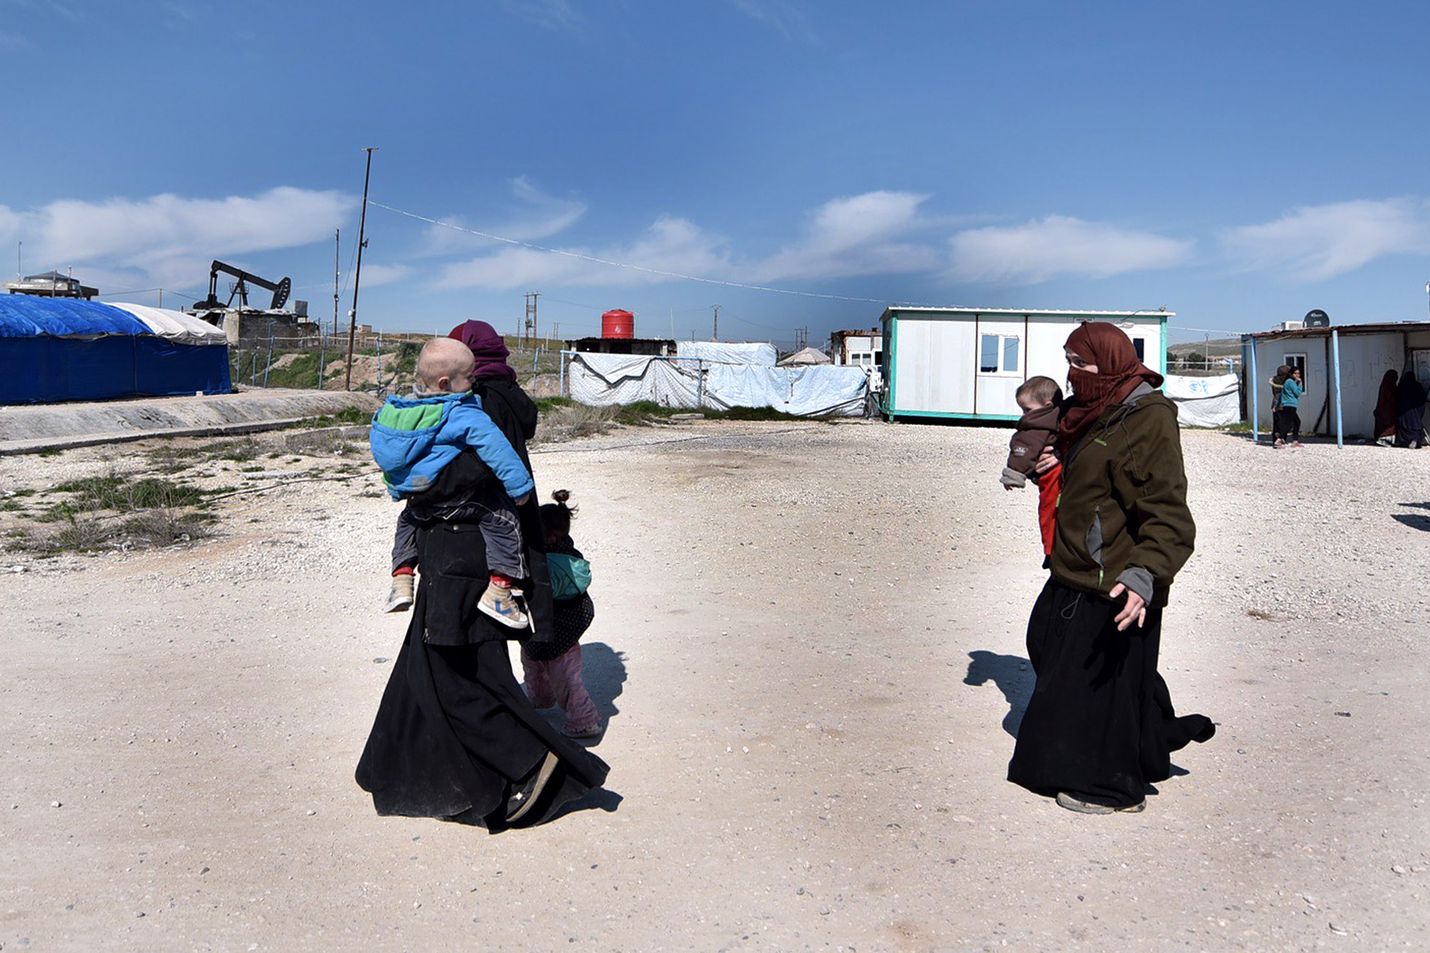 Mahdollisesti Isis-taistelijoiden vaimoja kävelemässä pakolaisleirillä Koillis-Syyriassa helmikuun lopulla. Isisin kokemien tappioiden myötä myös sen omia jäseniä pakenee järjestön aiemmin hallitsemista kaupungeista.